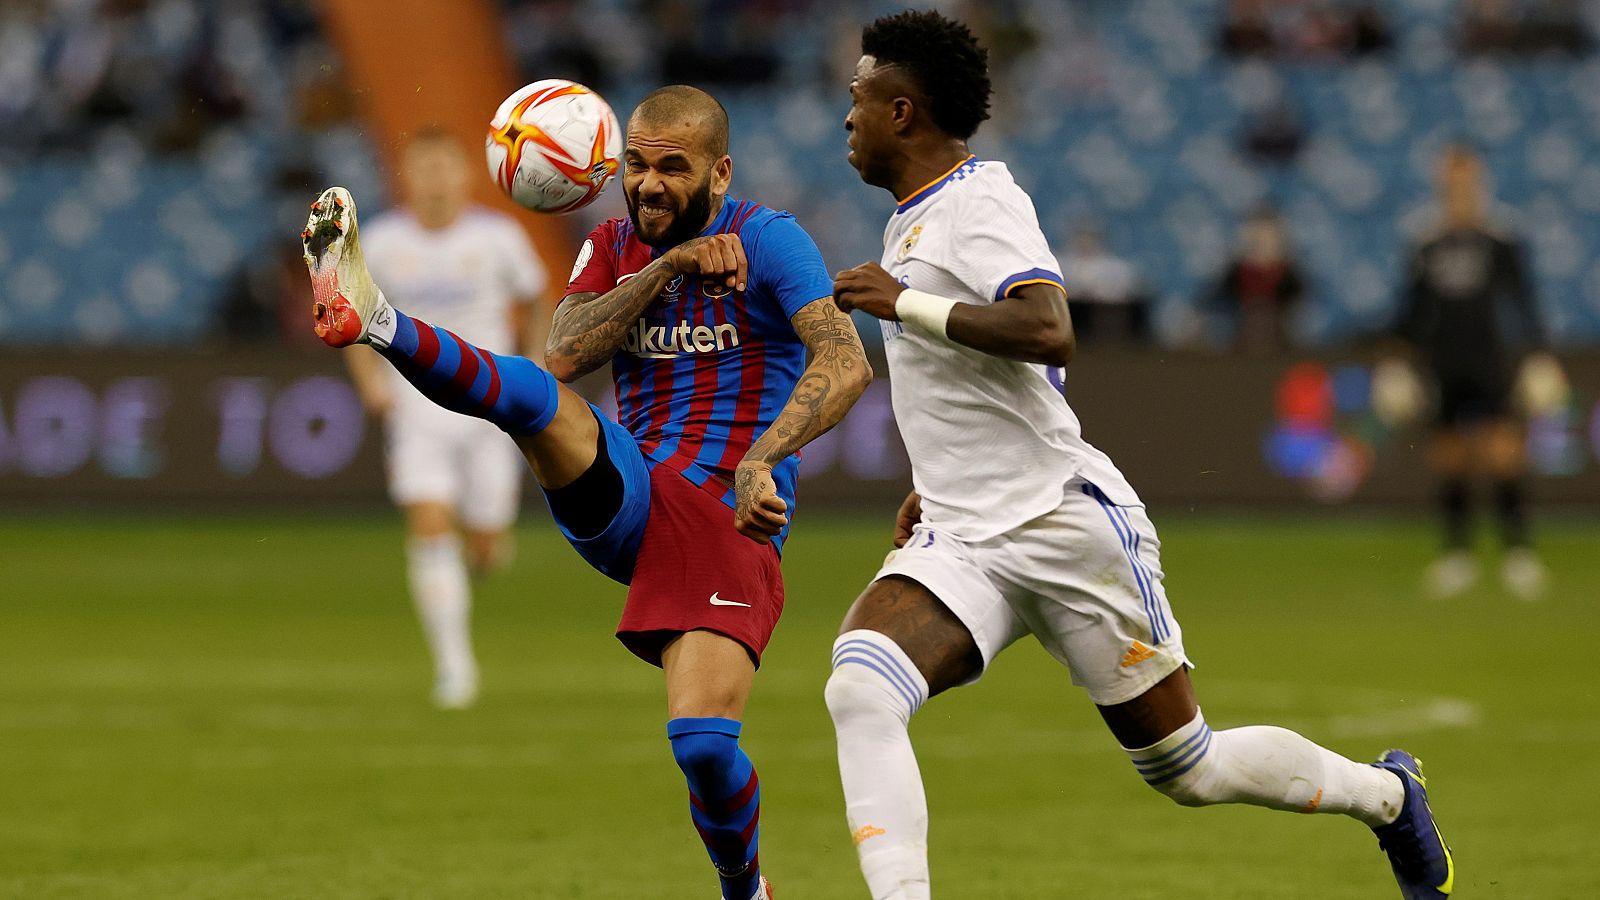 El delantero brasileño del Real Madrid, Vinicius Jr. disputa el balón con su compatriota, el defensa del FC Barcelona, Dani Alves.